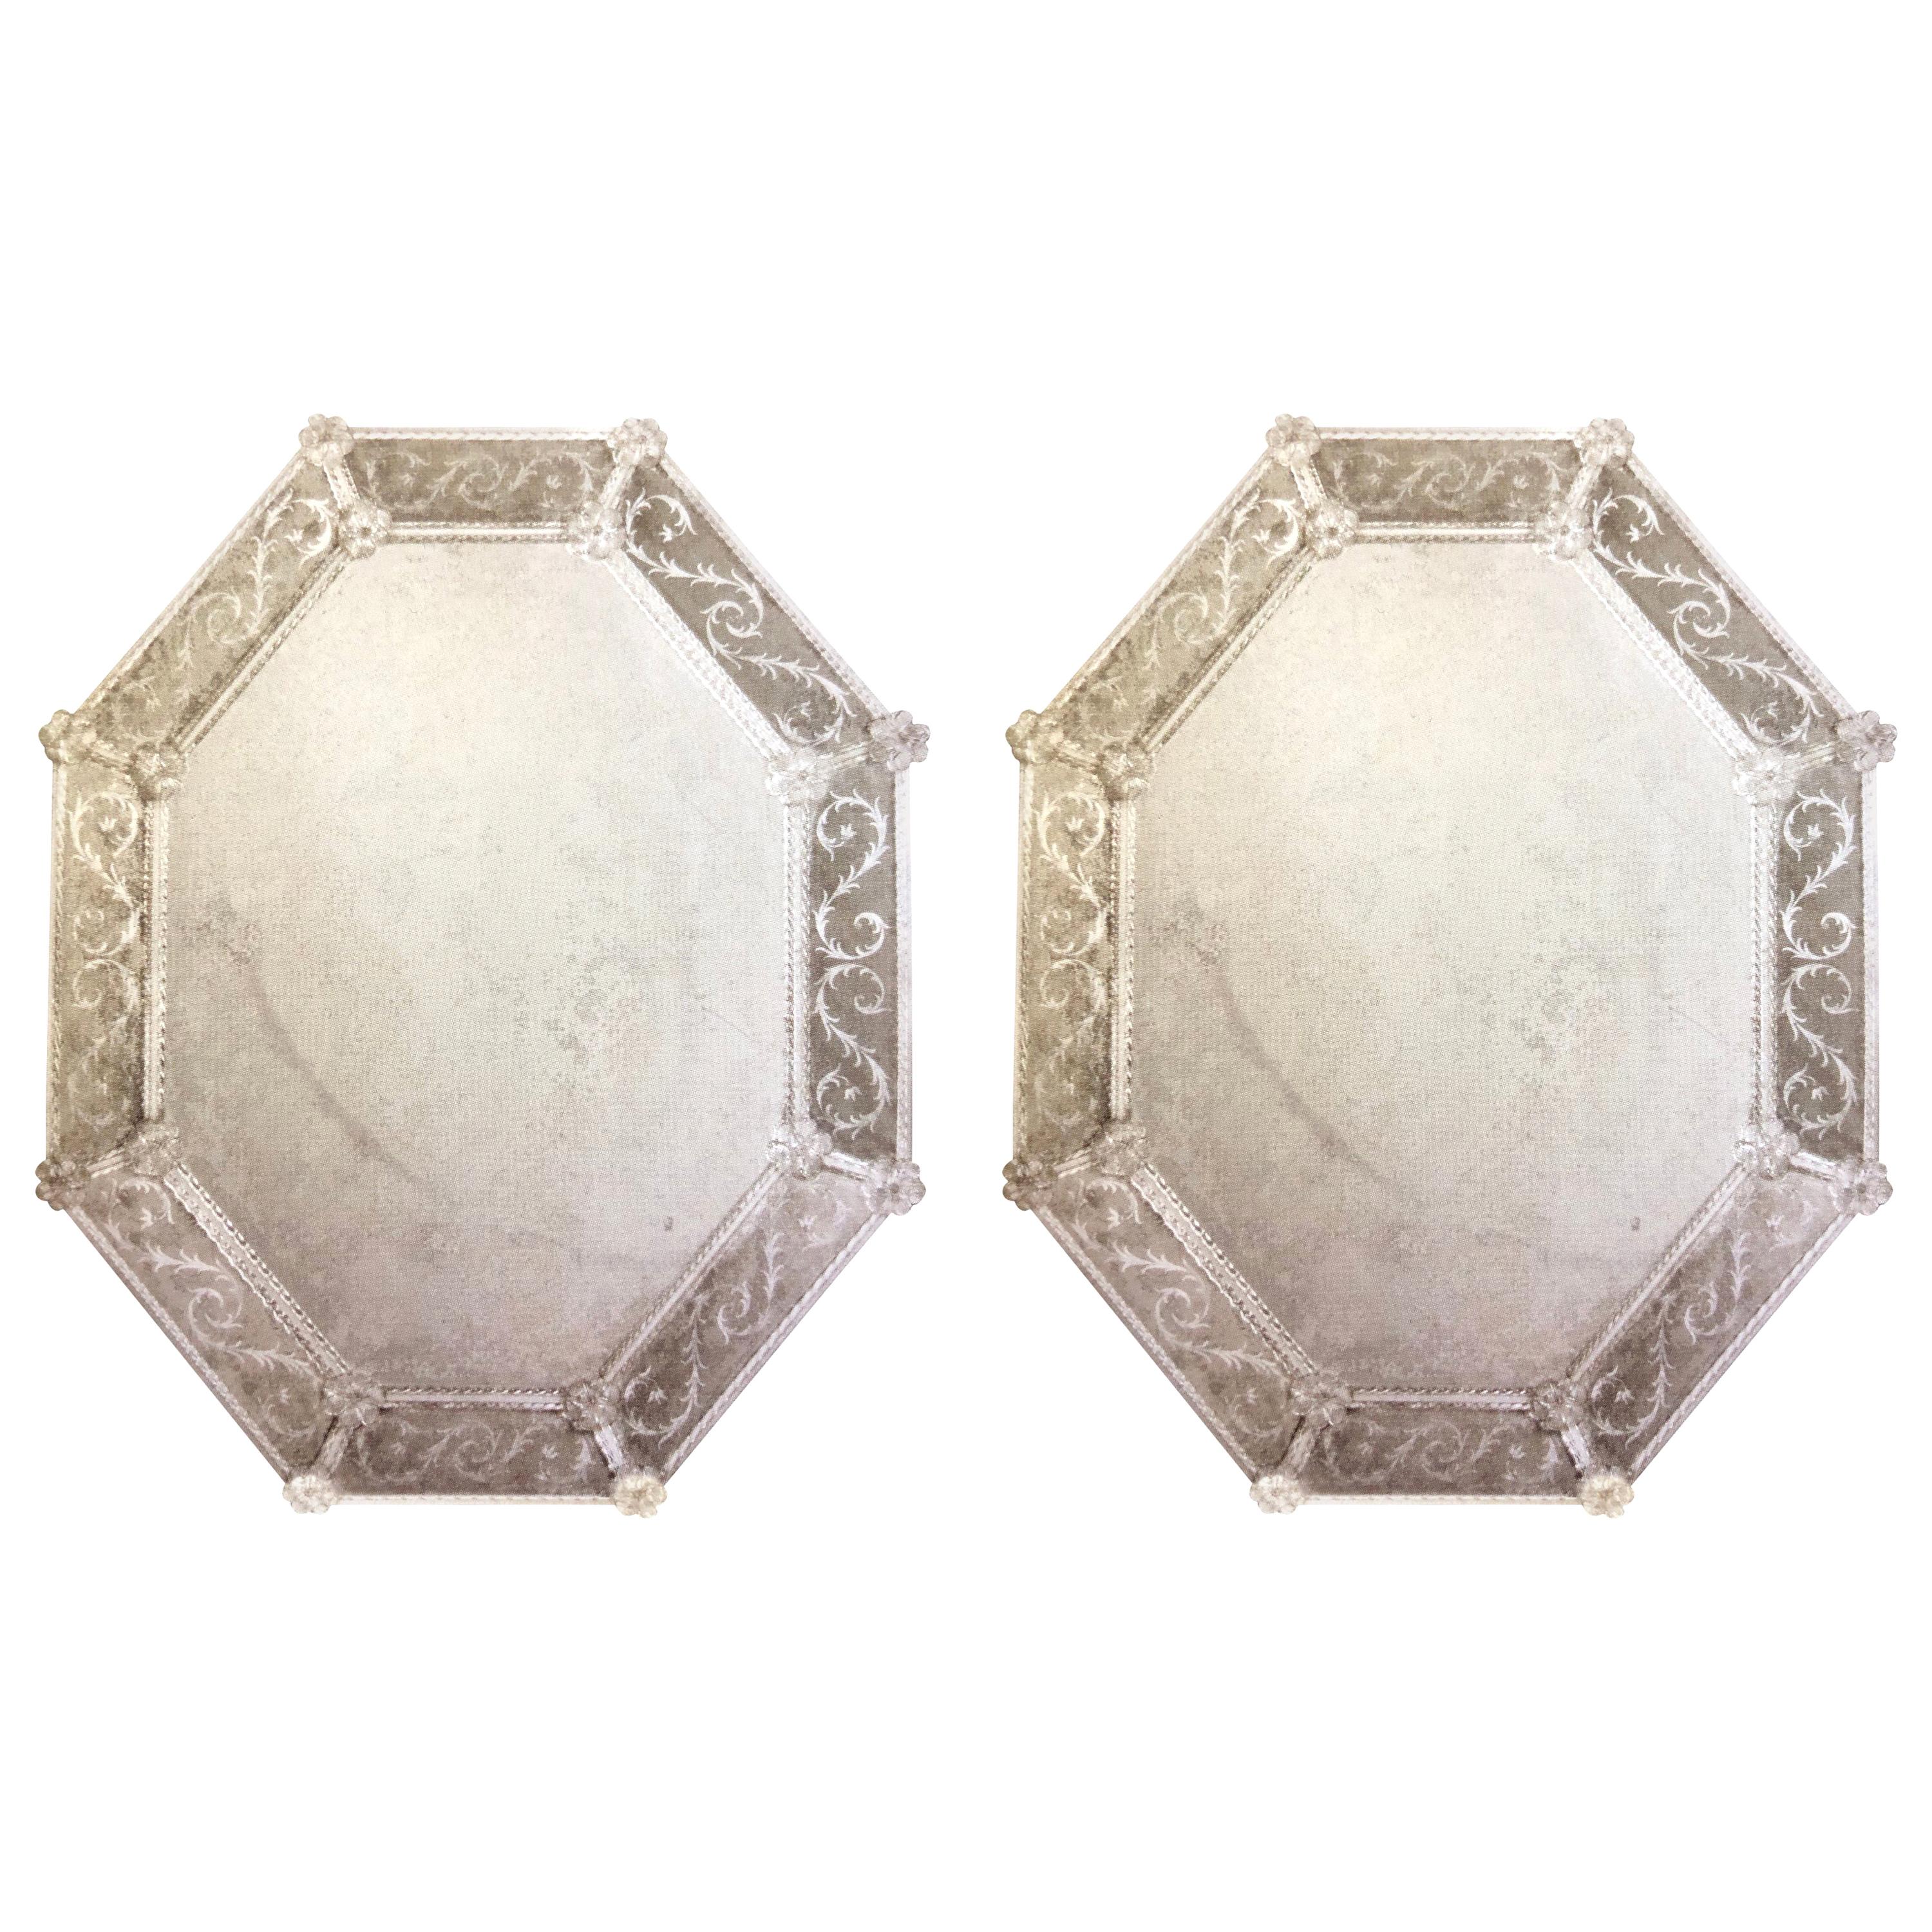 Deux grands miroirs muraux octogonaux en verre vénitien de Murano, anciens et gravés en vente